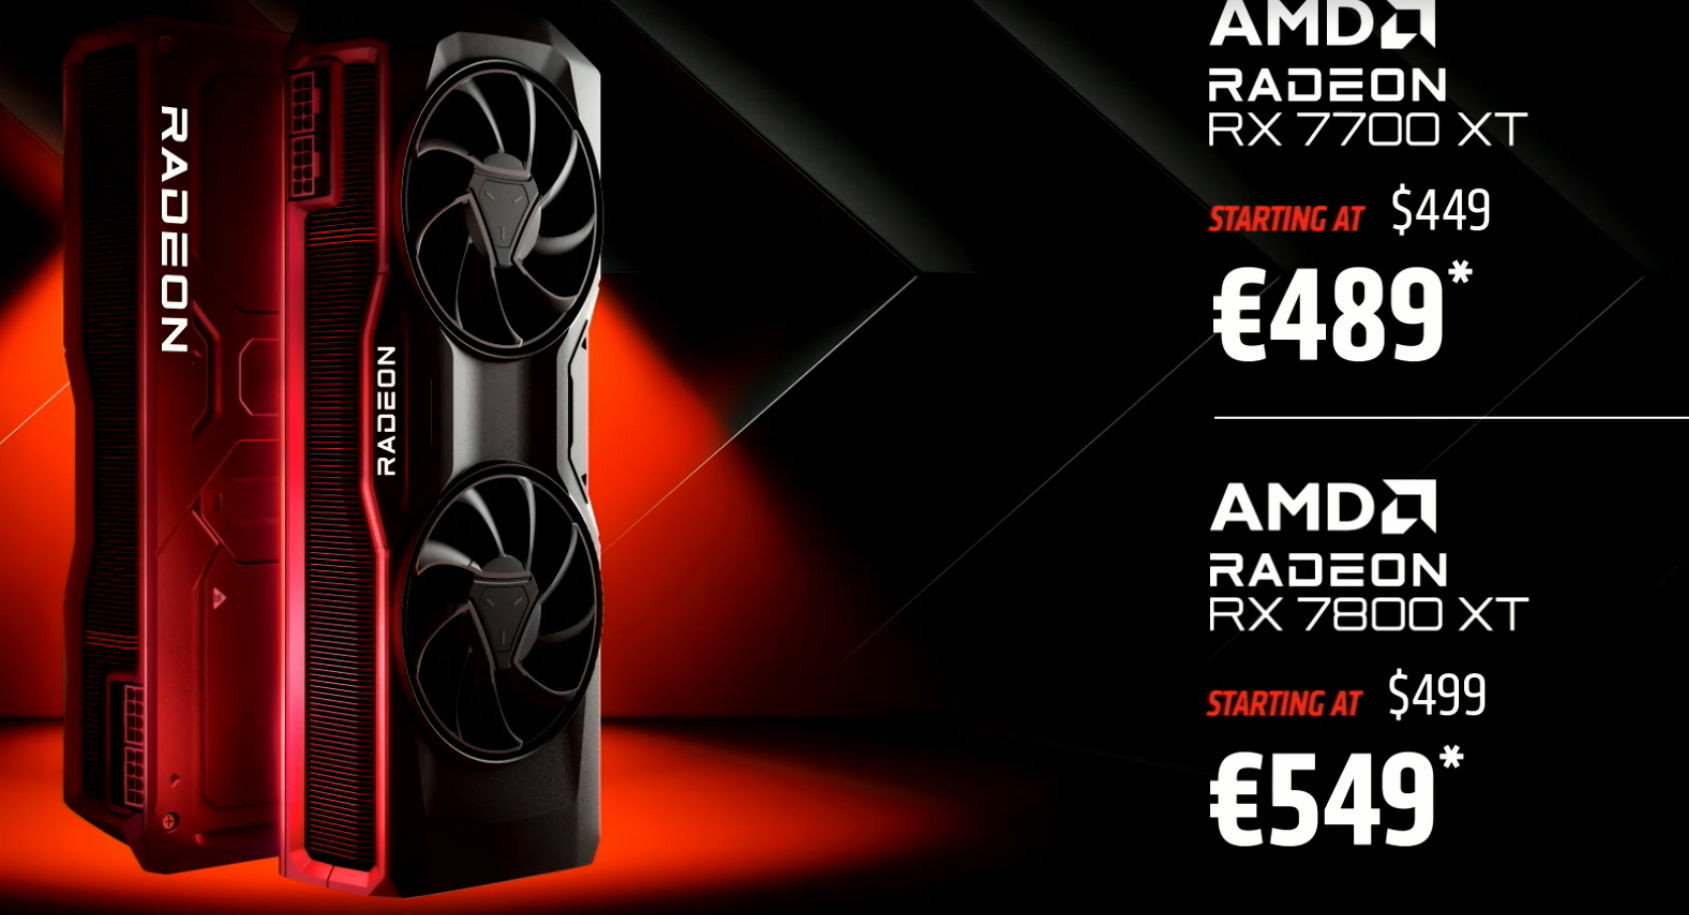 AMD Radeon RX 7700 XT RX 7800 XT prix